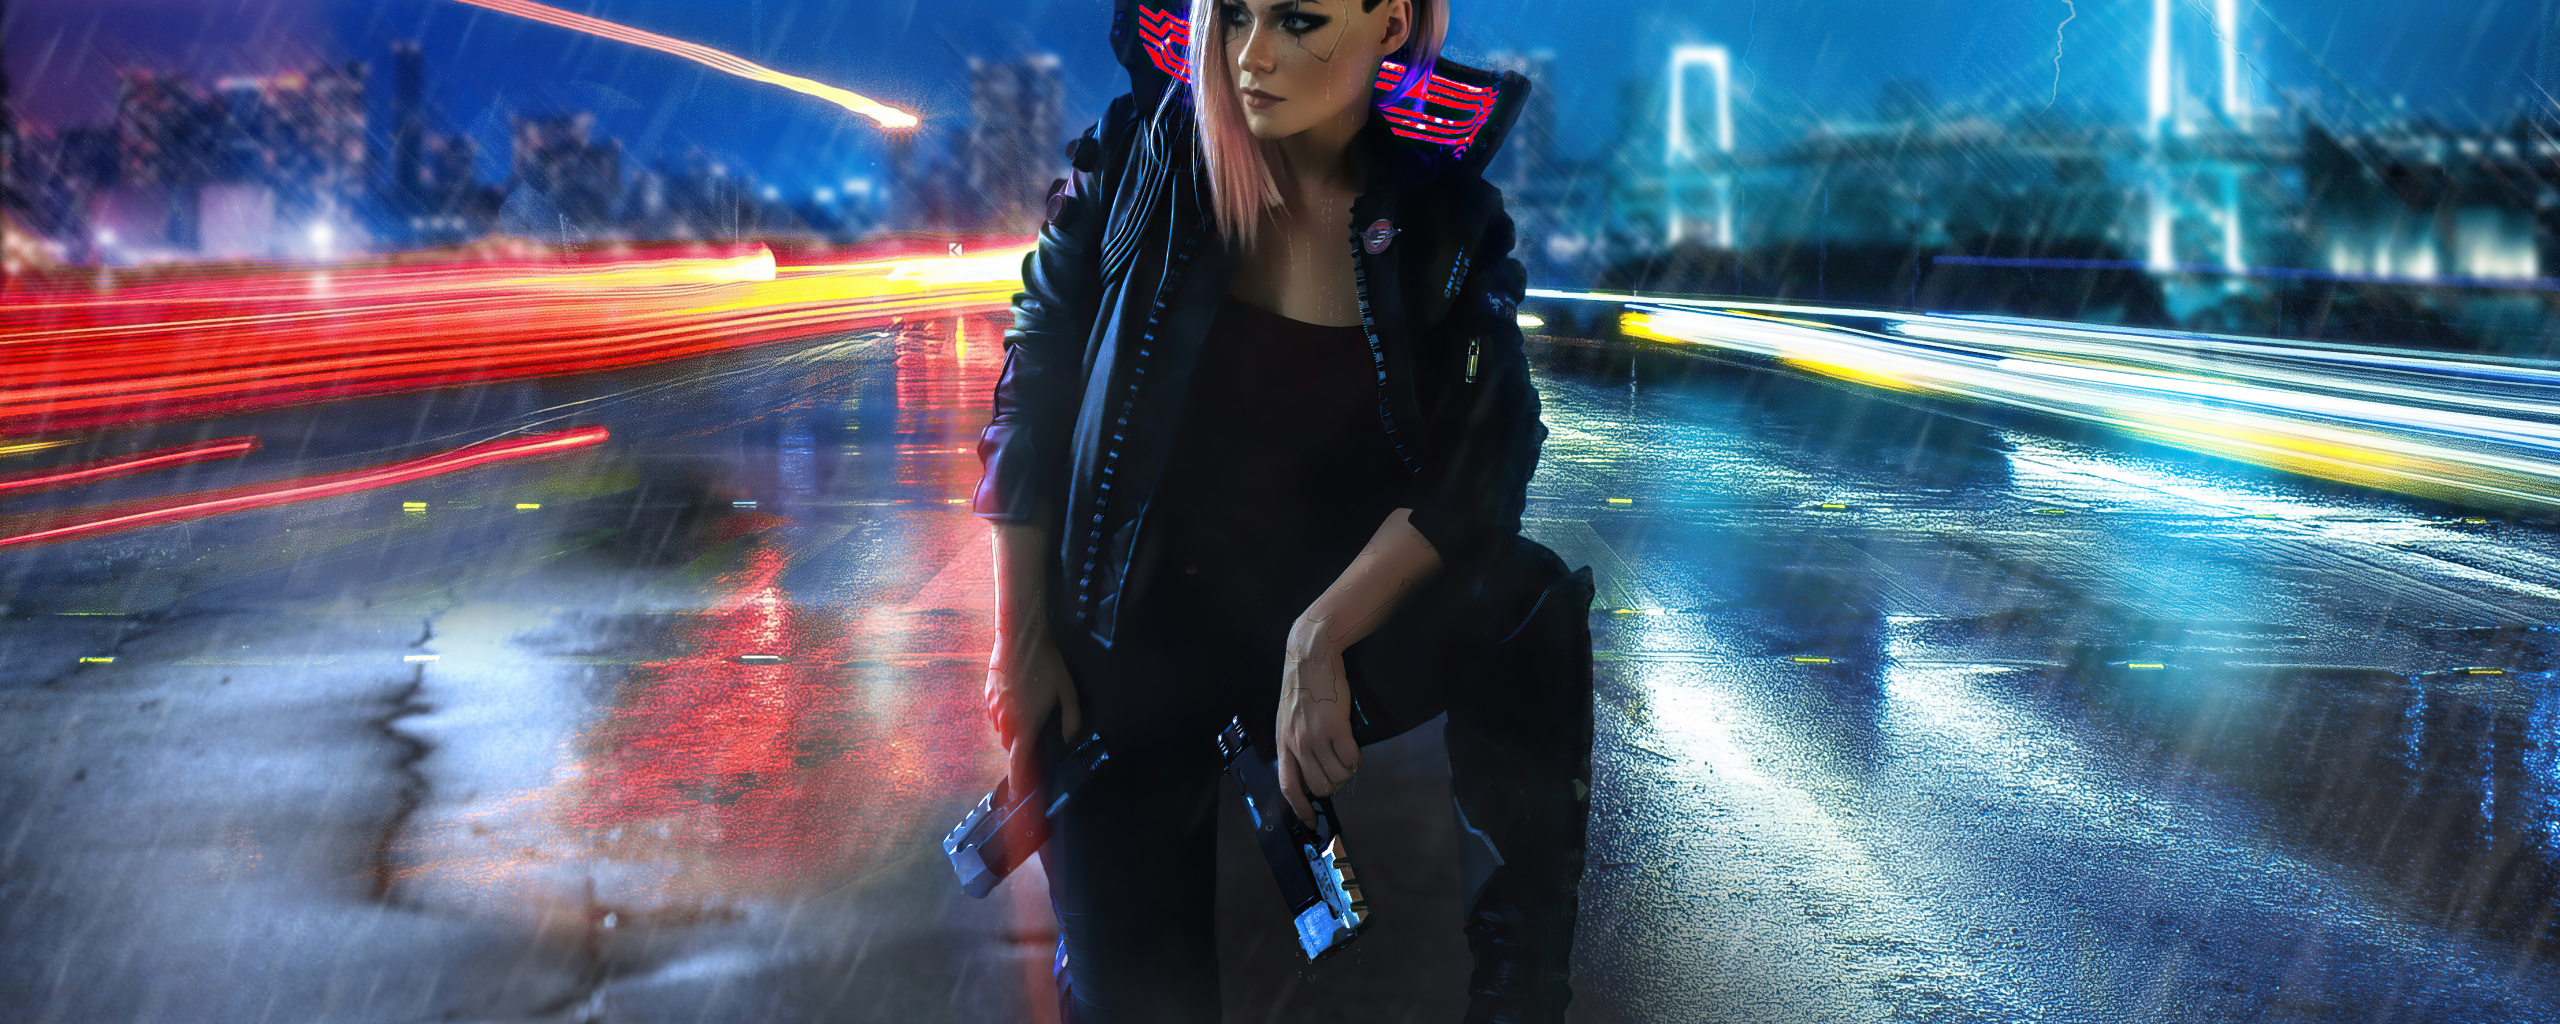 Girl and gun, video game, cyberpunk 2077, 2560x1024 wallpaper